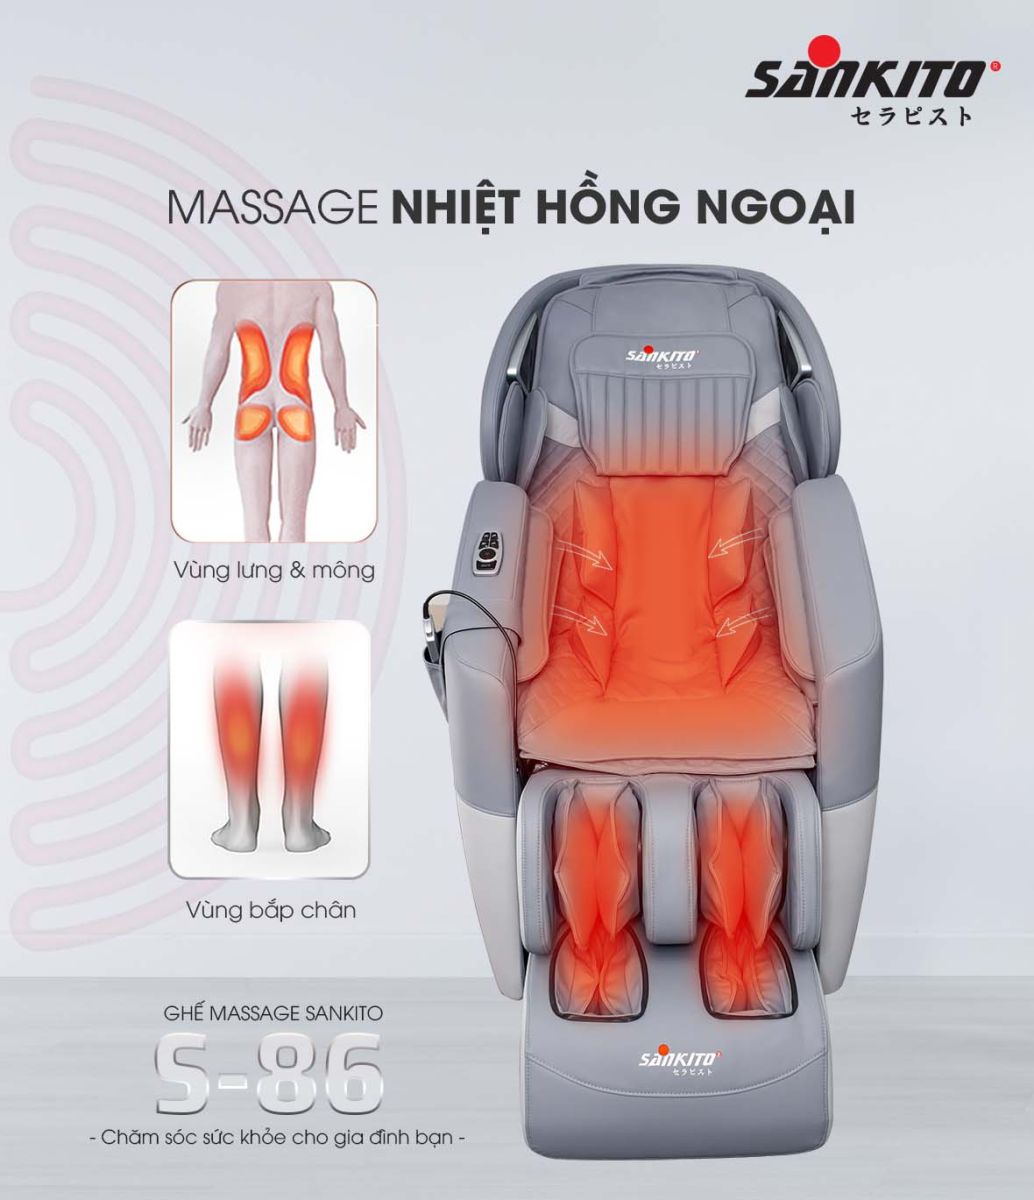 Ghế massage sưởi nhiệt hồng ngoại S-86